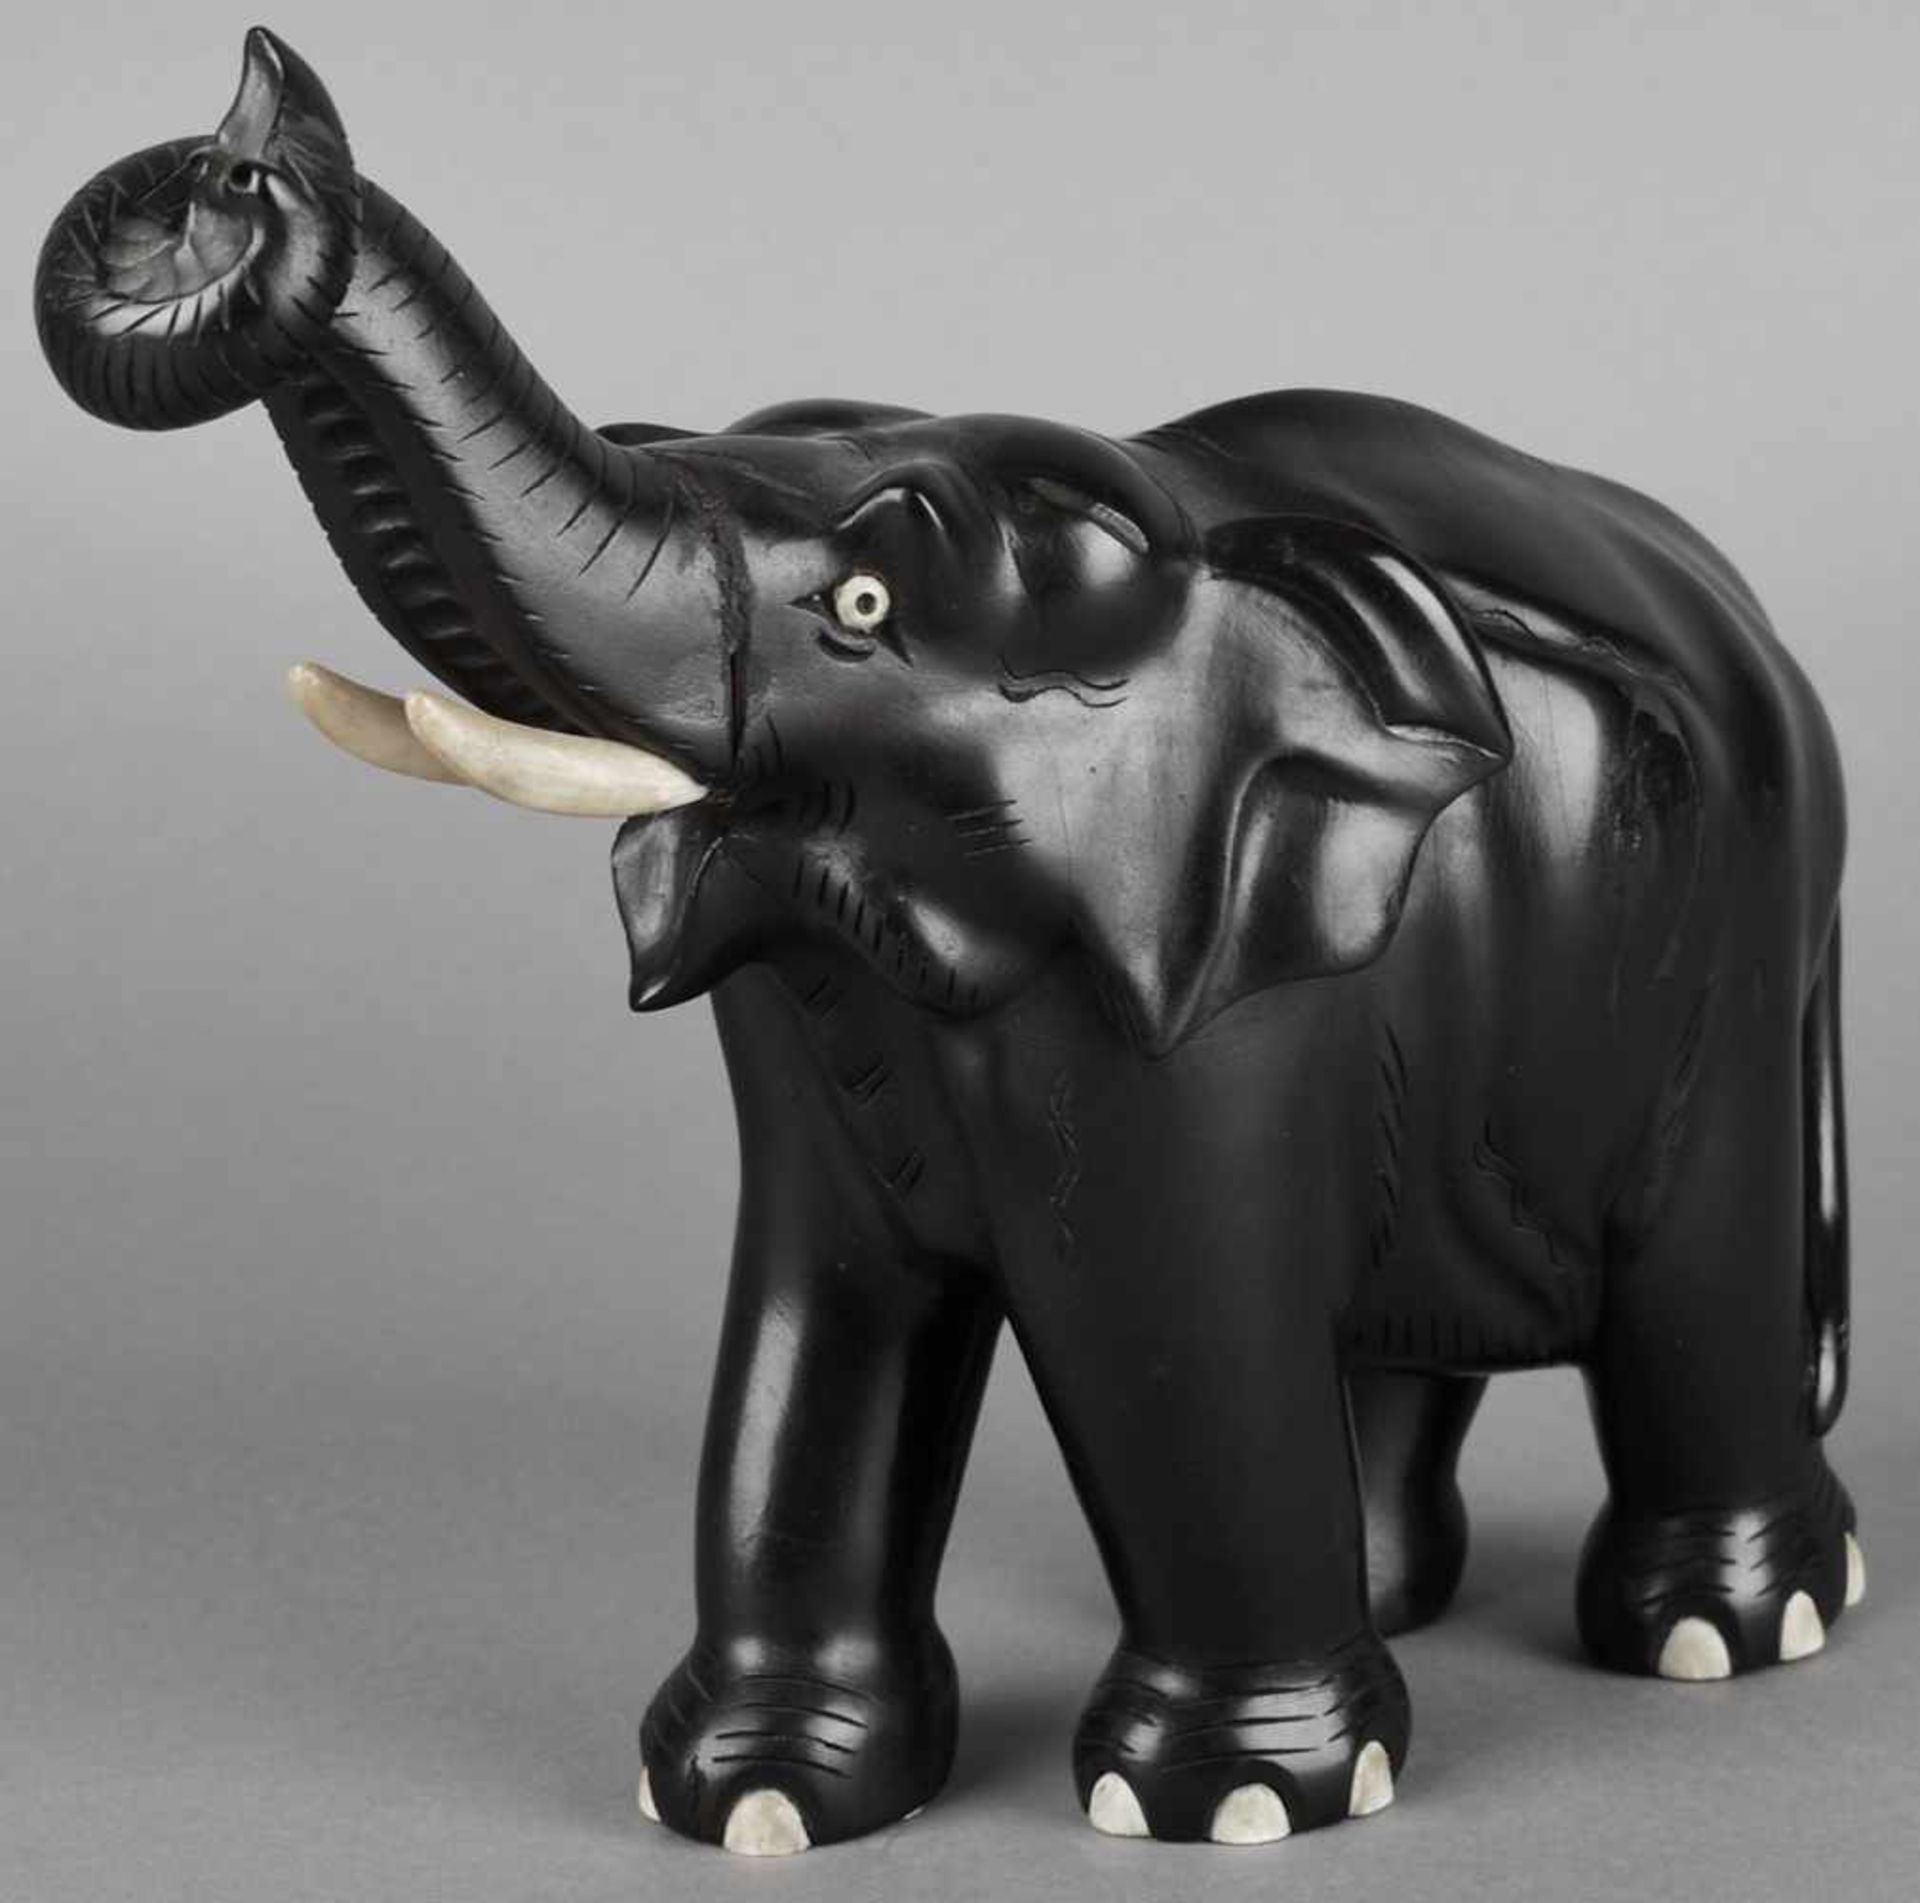 Elefantenfigur Tropenholz, geschnitzt und schwarz bemalt, schreitender Elefant mit erhobenem Rüssel, - Bild 2 aus 3